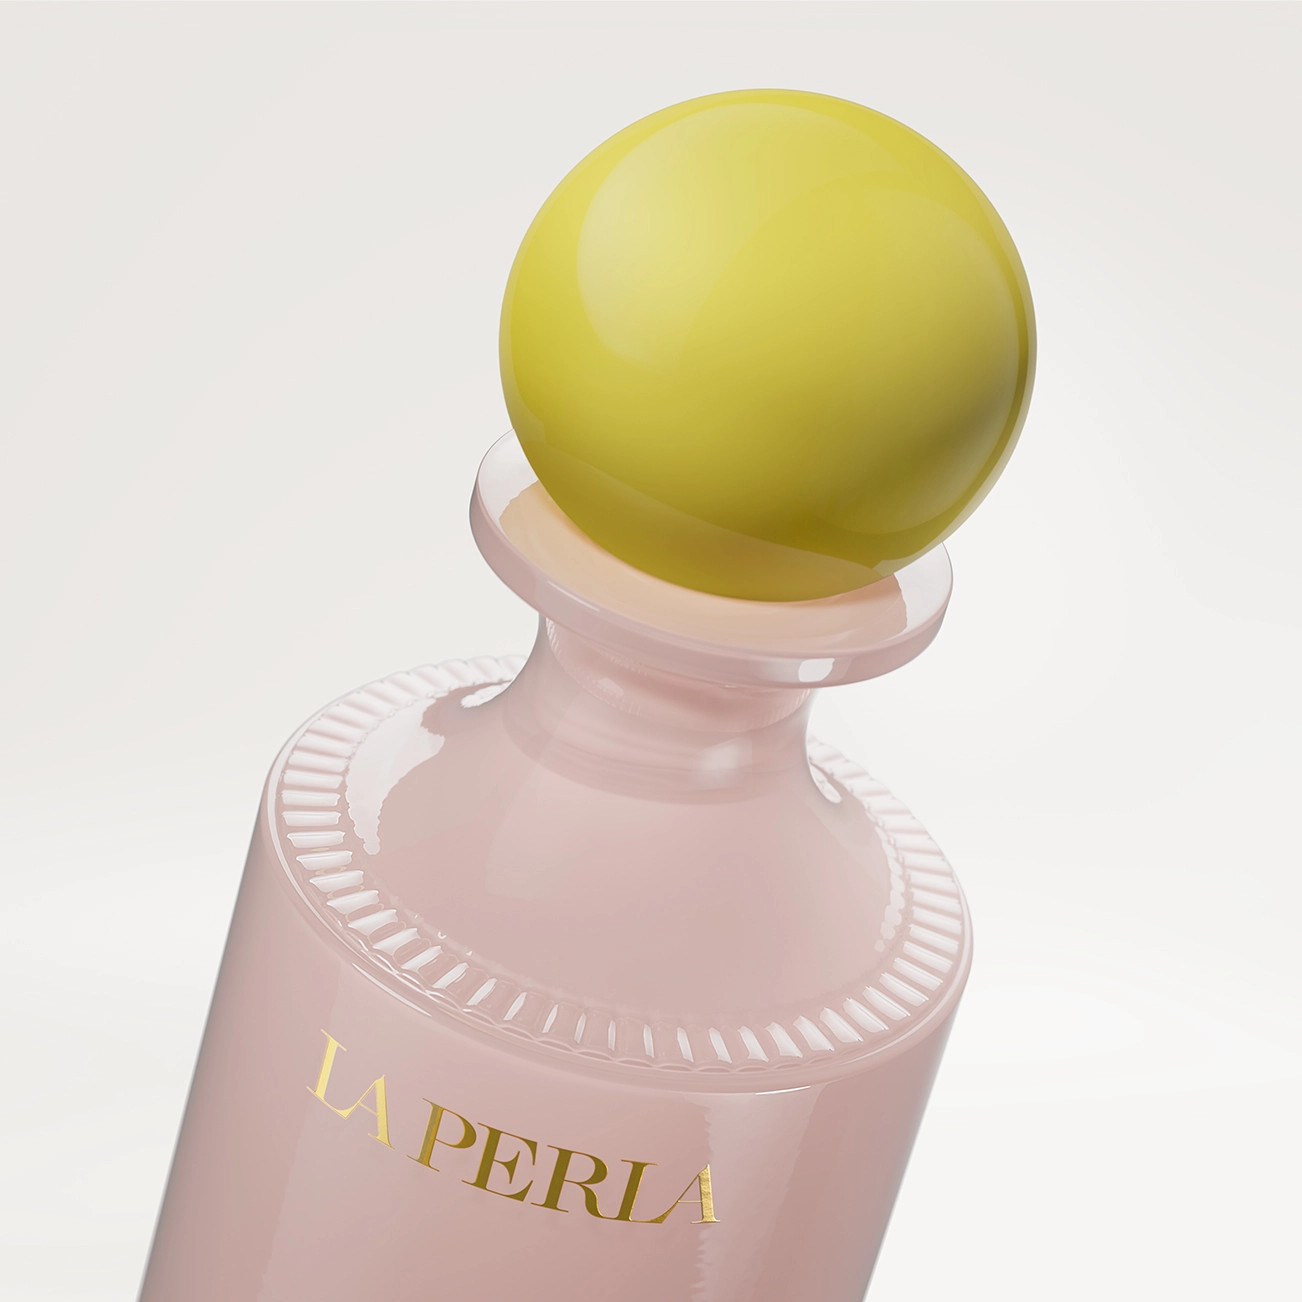 la perla perfume invisible touch